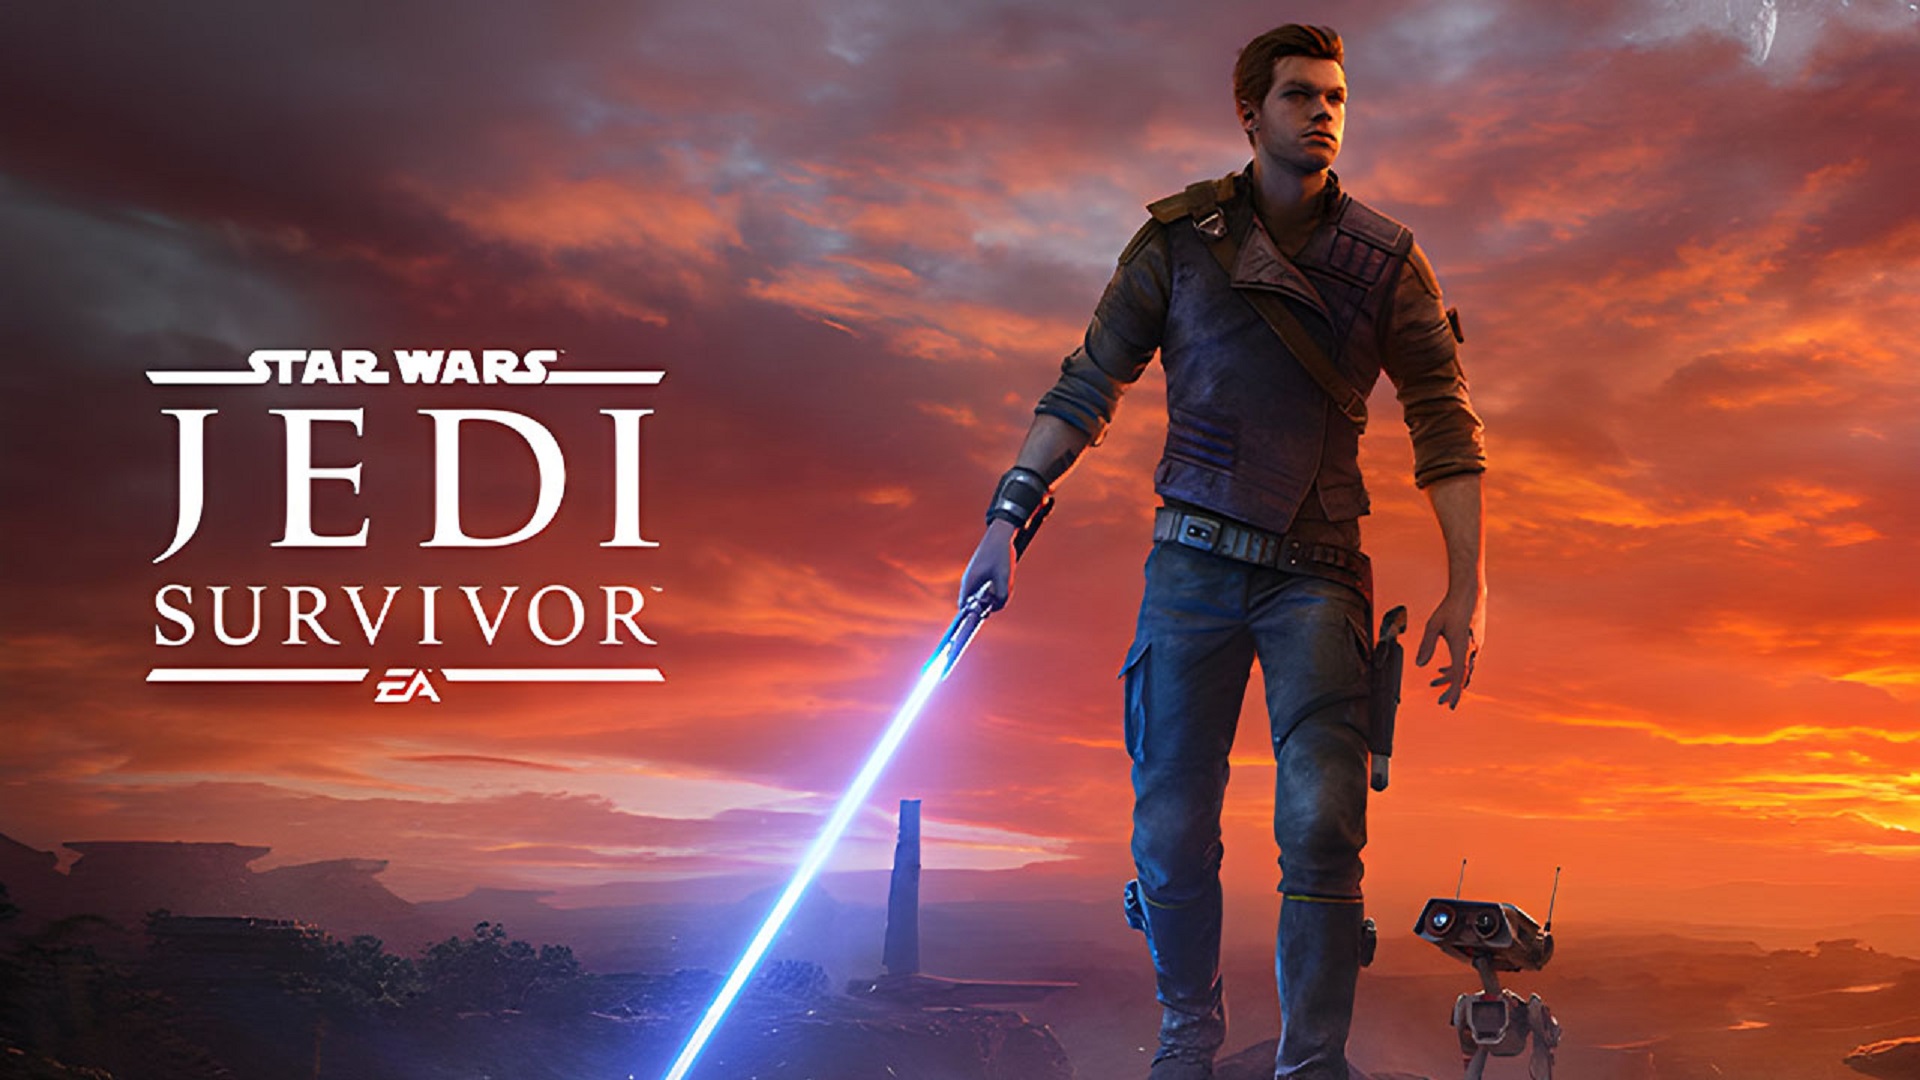 Star Wars Jedi: Survivor ปล่อยคลิปสุดท้าย Final Trailer ก่อนออกรบ